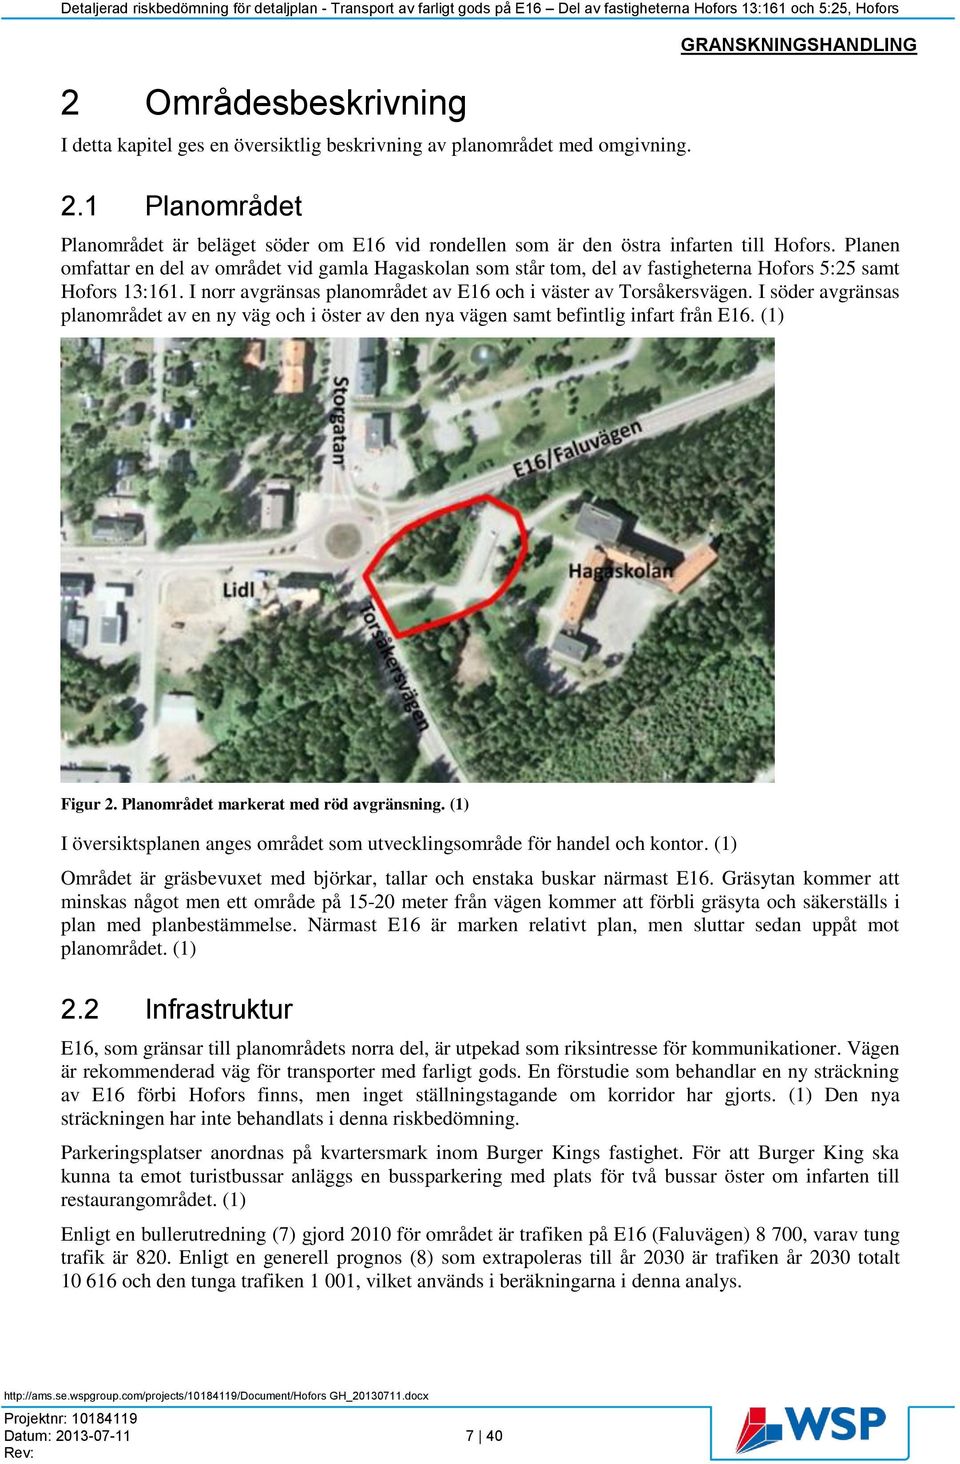 Planen omfattar en del av området vid gamla Hagaskolan som står tom, del av fastigheterna Hofors 5:25 samt Hofors 13:161. I norr avgränsas planområdet av E16 och i väster av Torsåkersvägen.